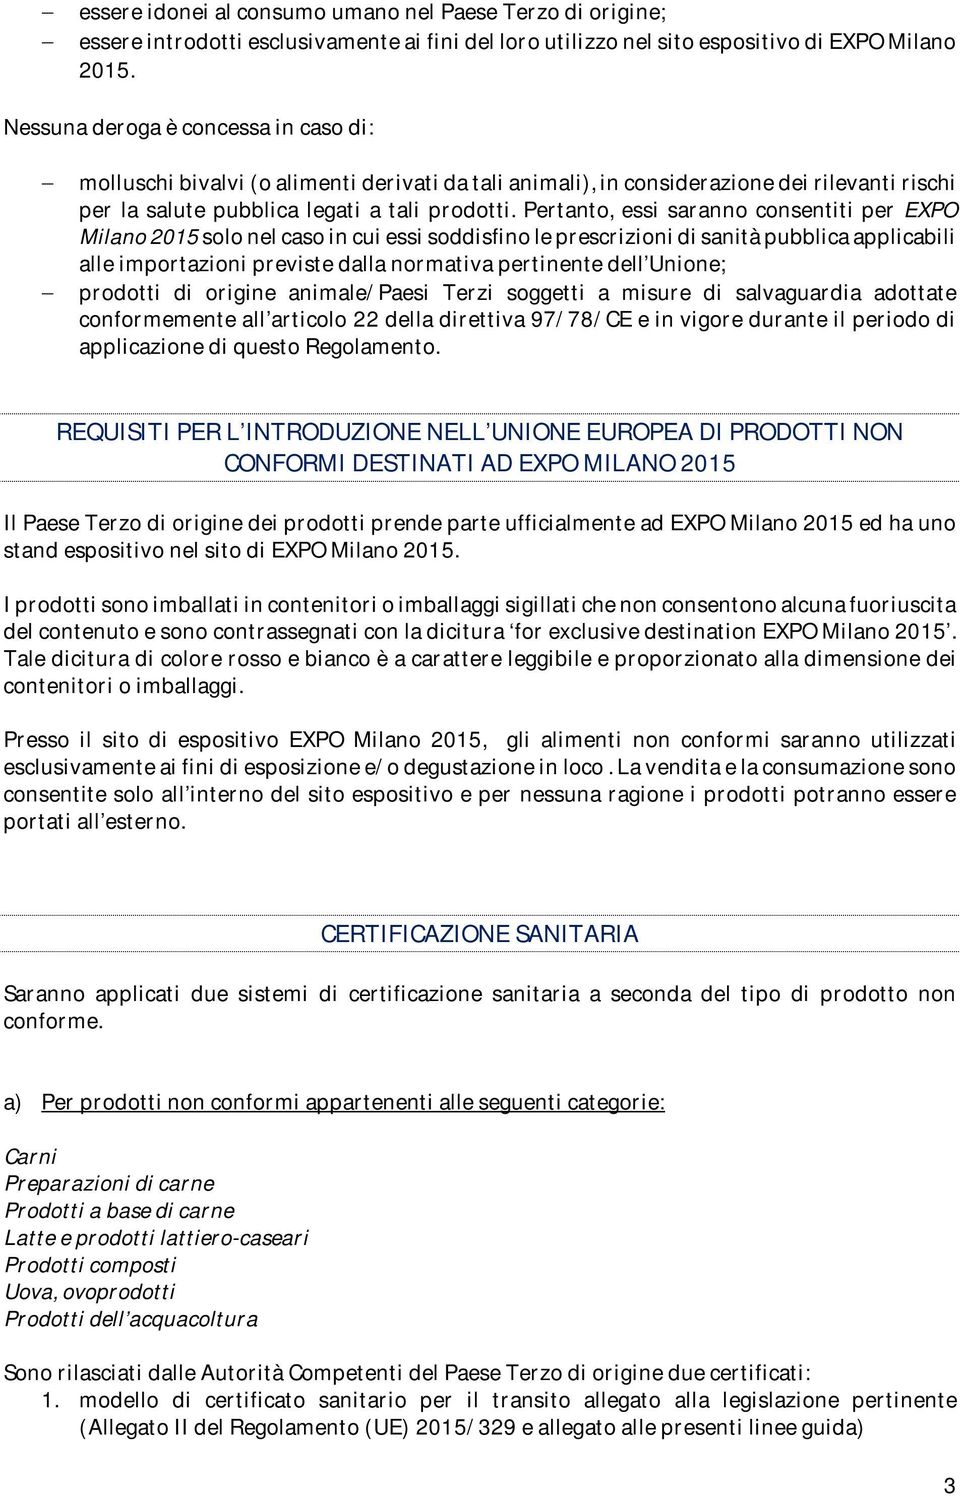 Pertanto, essi saranno consentiti per EXPO Milano 2015 solo nel caso in cui essi soddisfino le prescrizioni di sanità pubblica applicabili alle importazioni previste dalla normativa pertinente dell